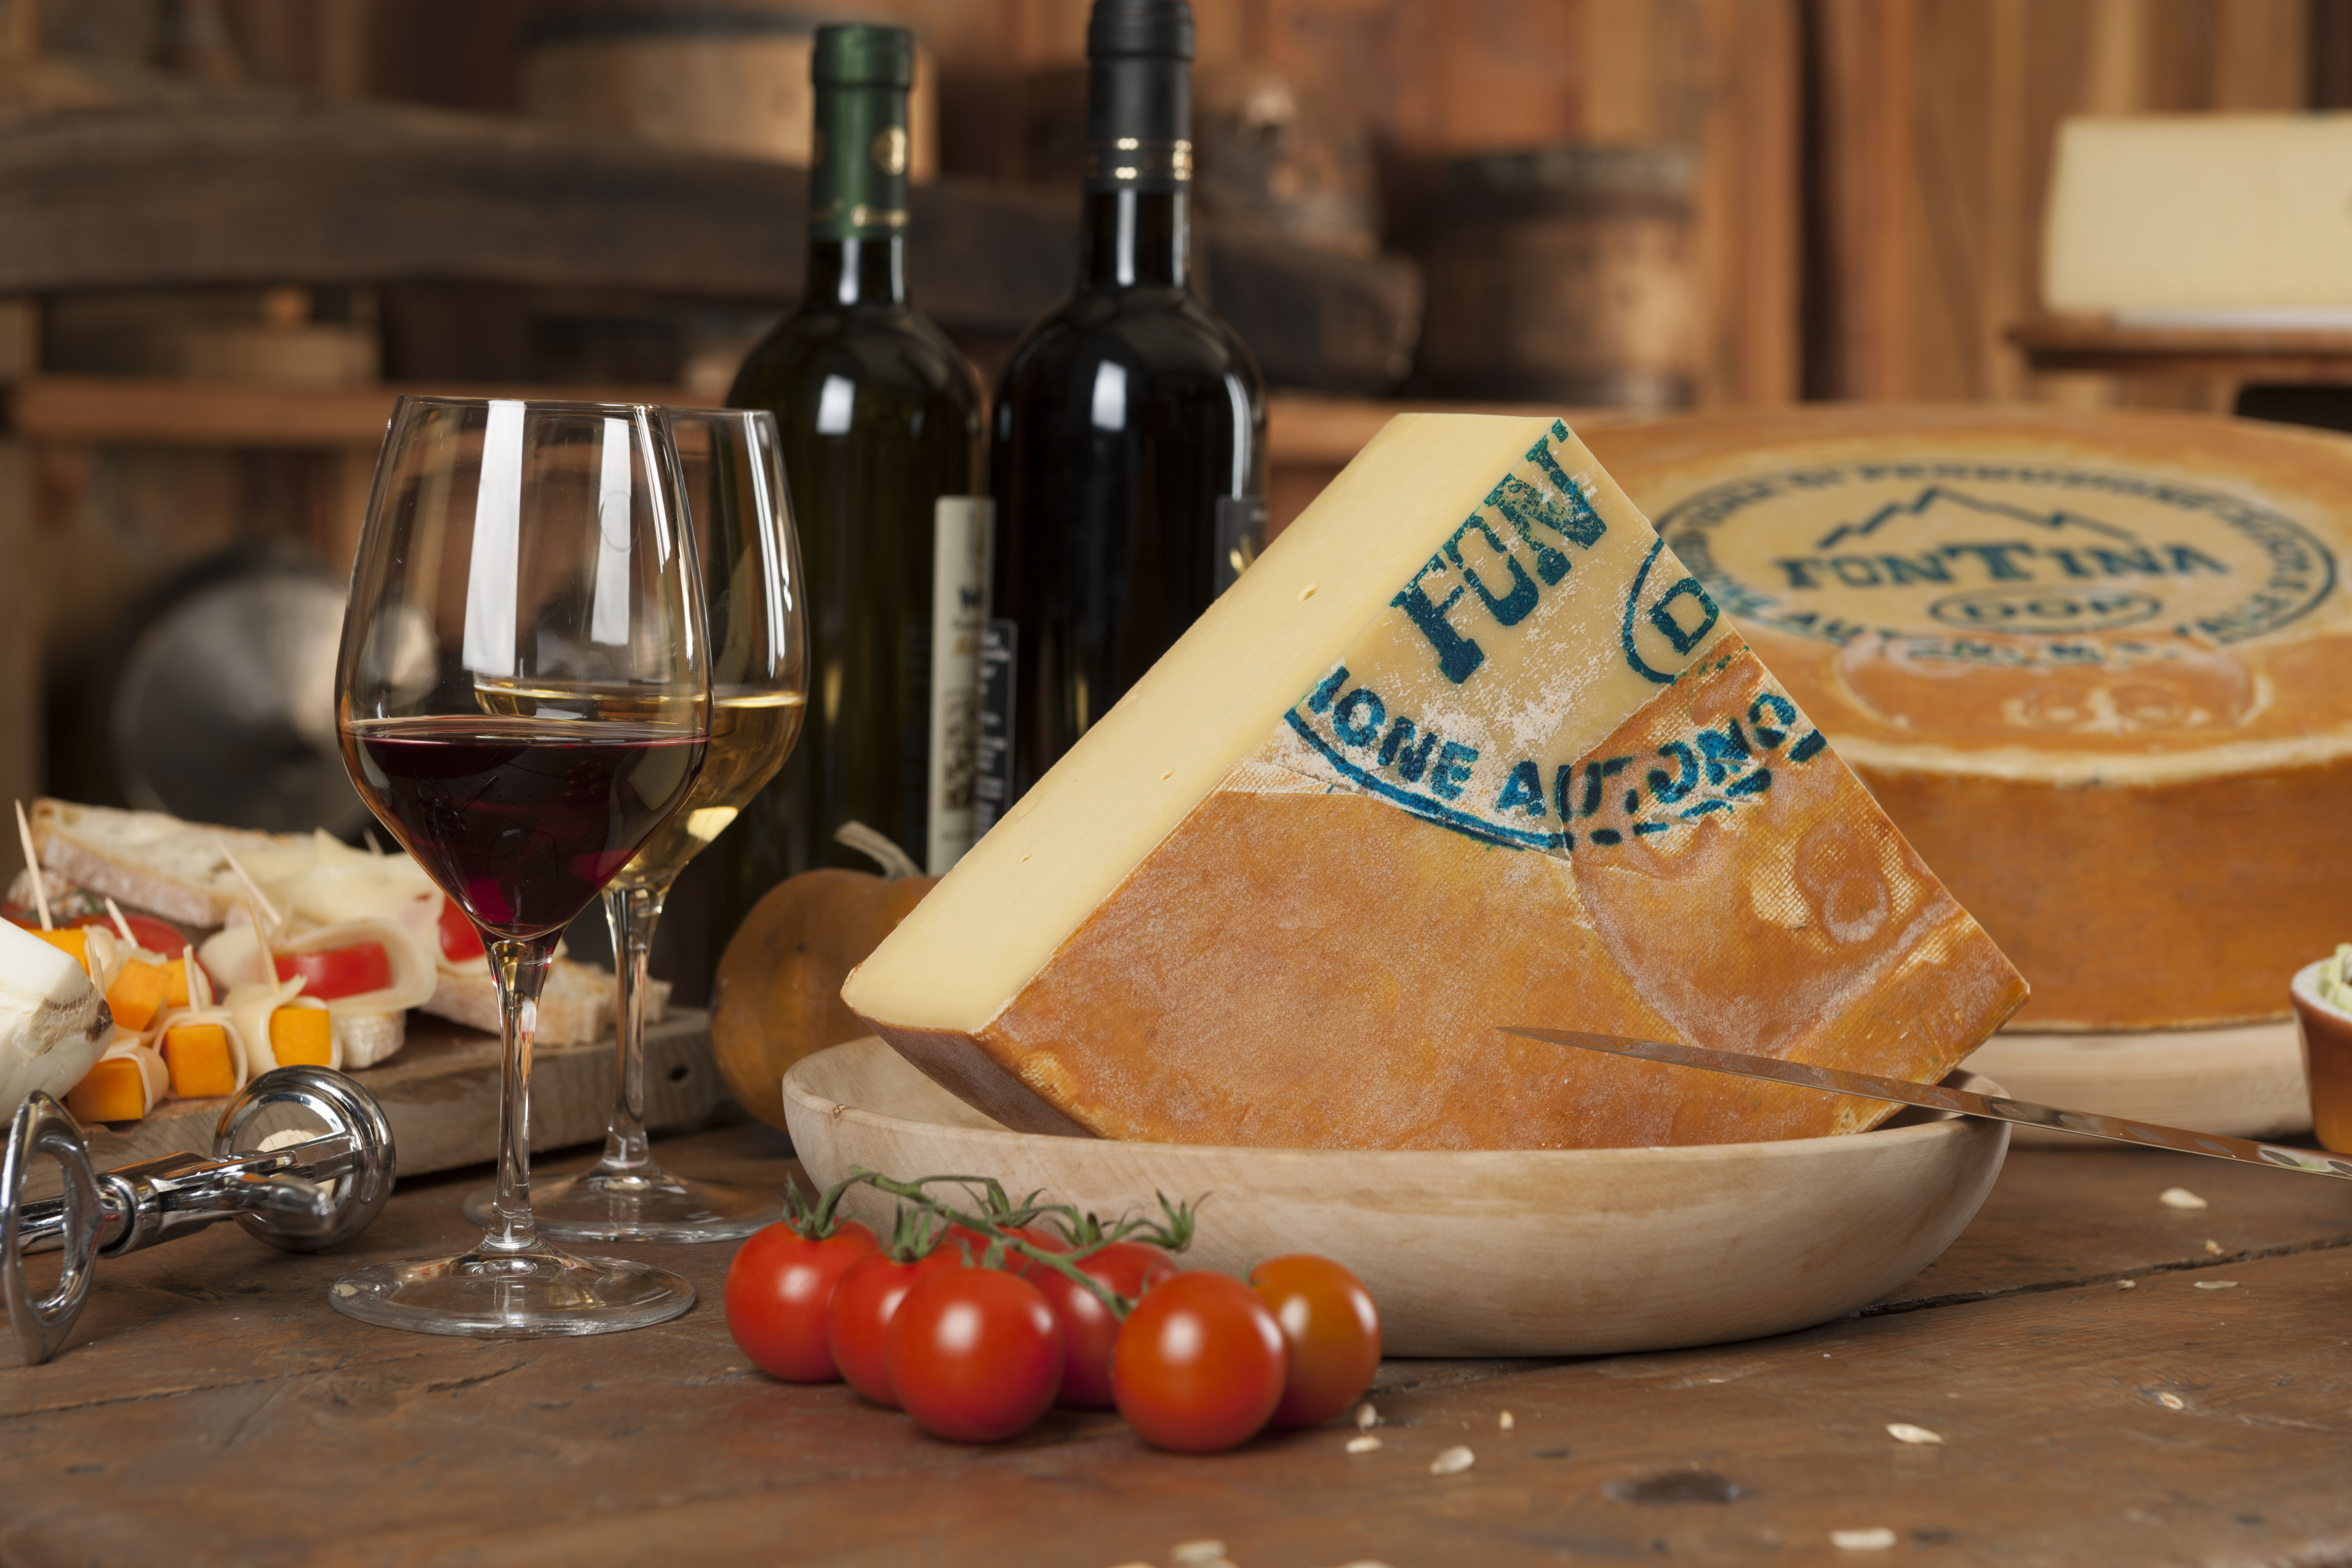 Italian alpine cheese nyt